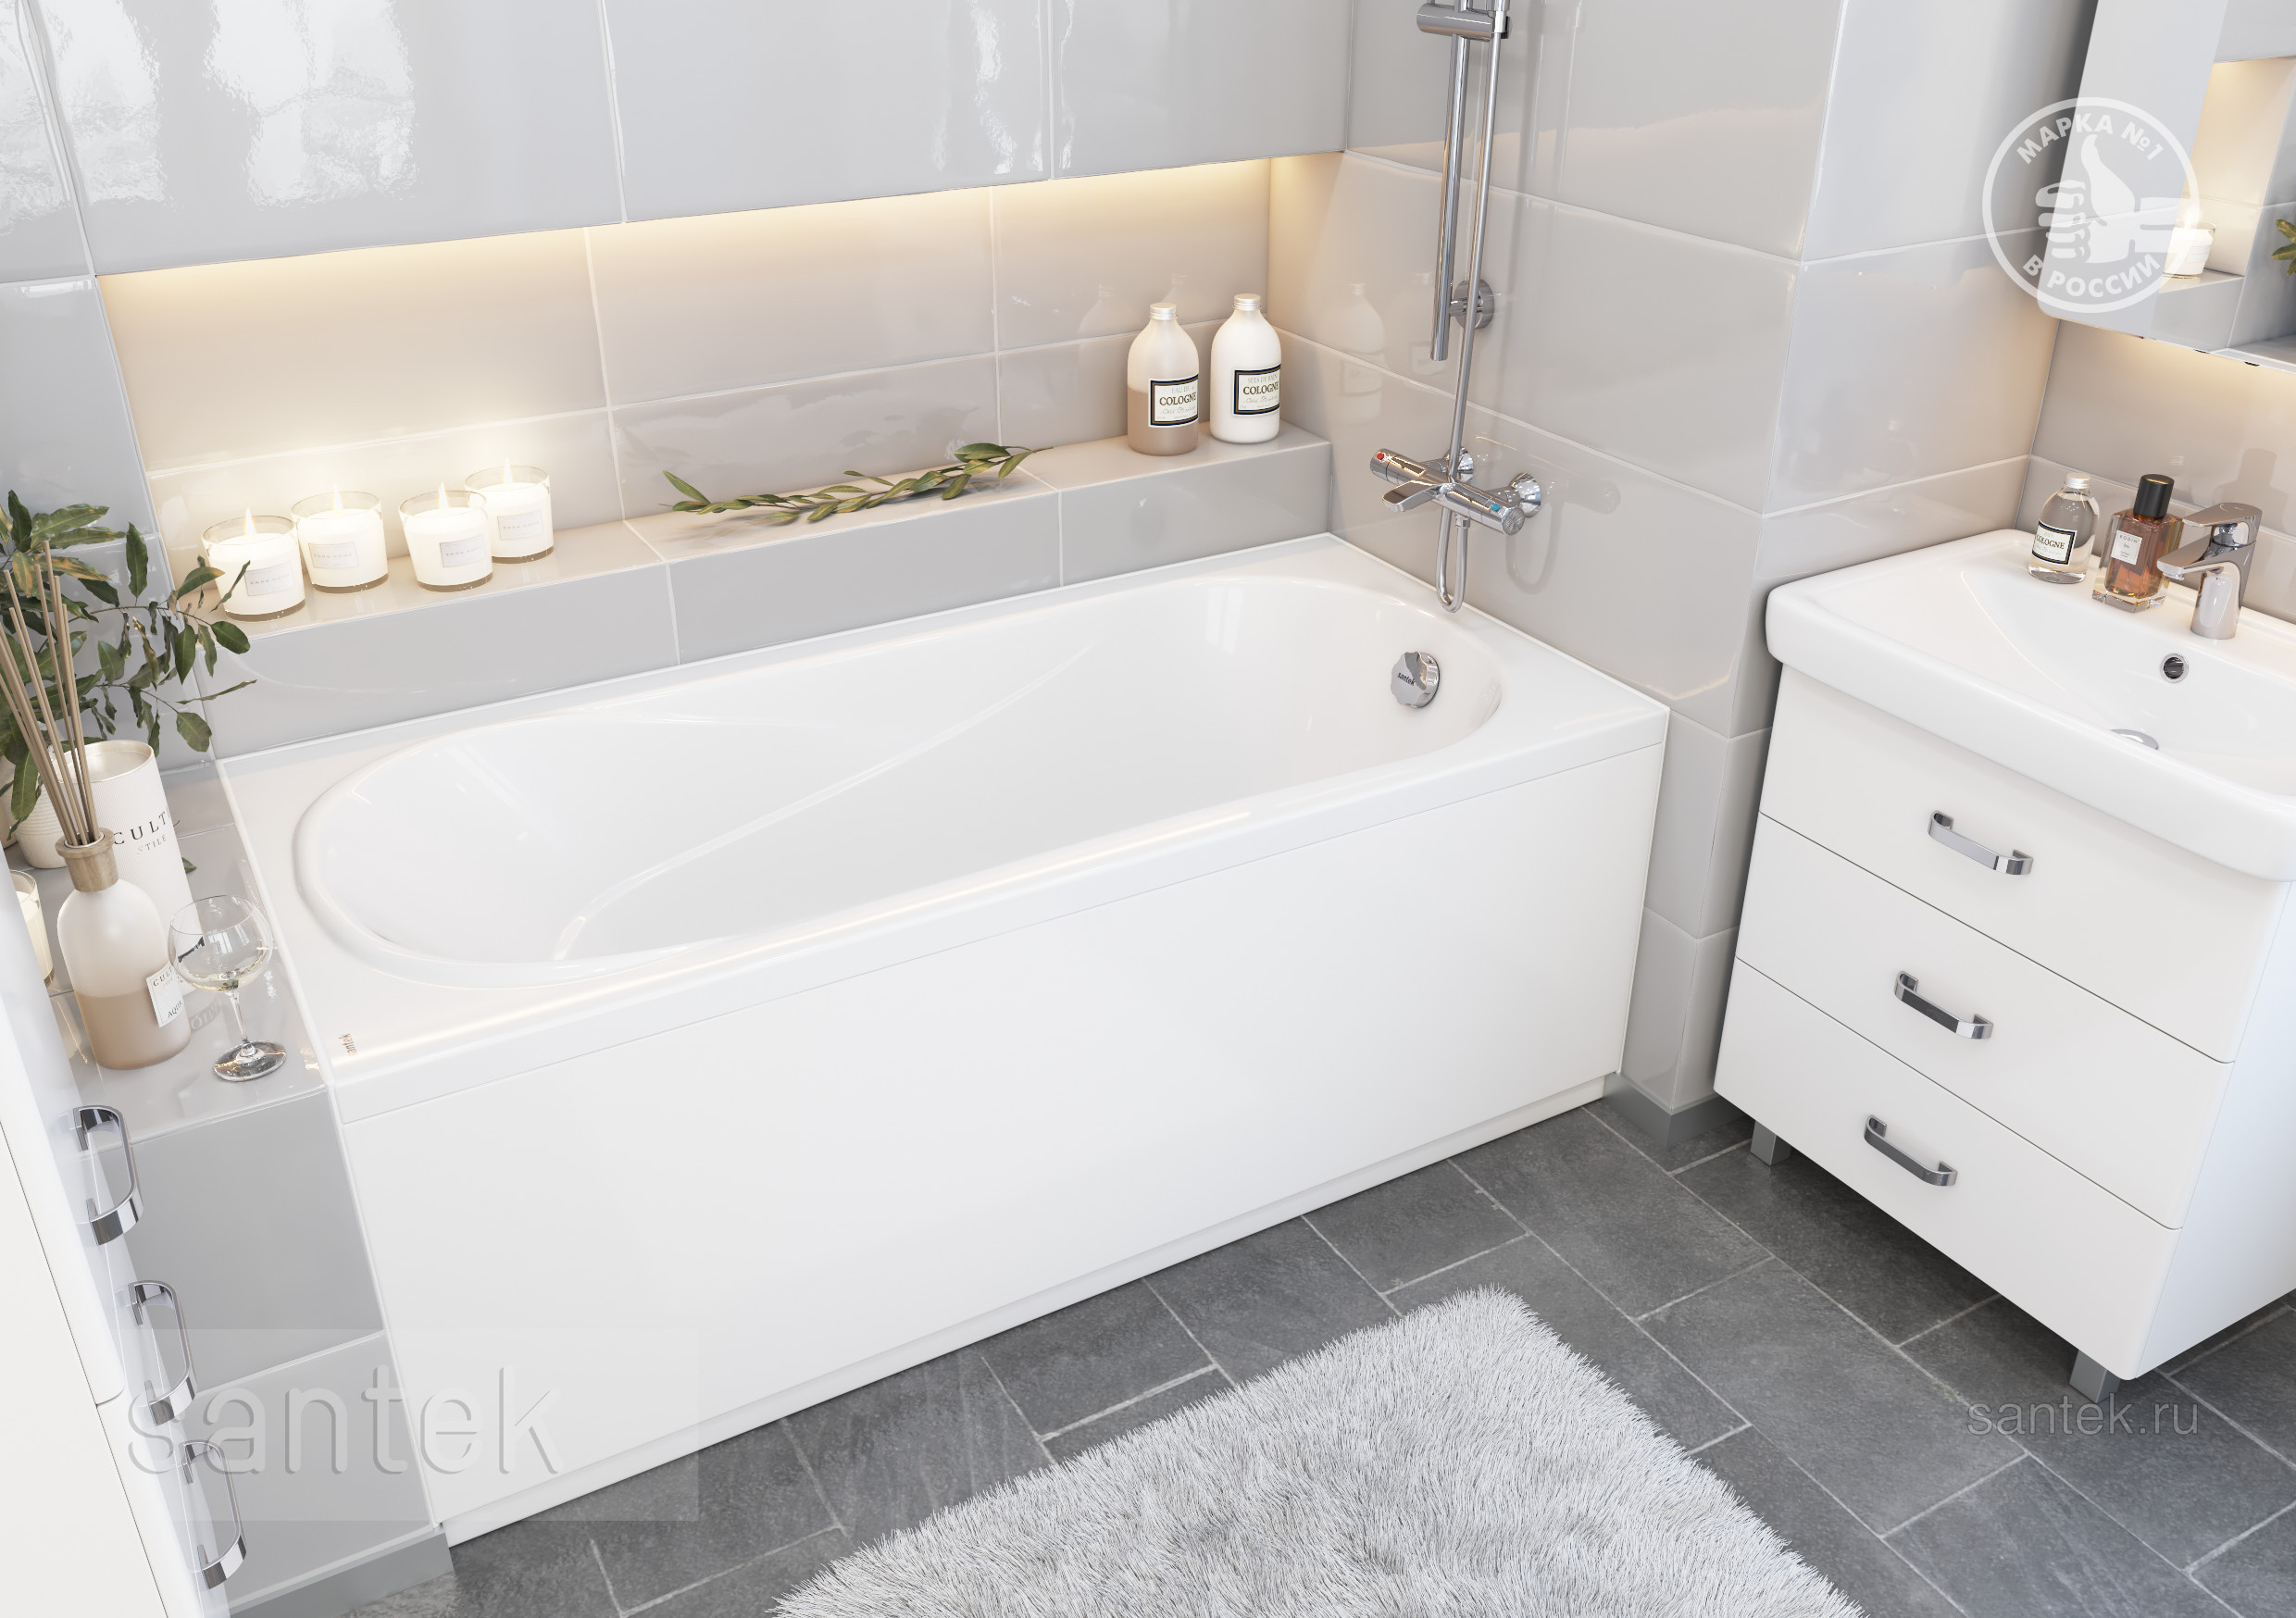 Акриловая ванна Santek Касабланка XL 180х80 прямоугольная белая 1WH302482